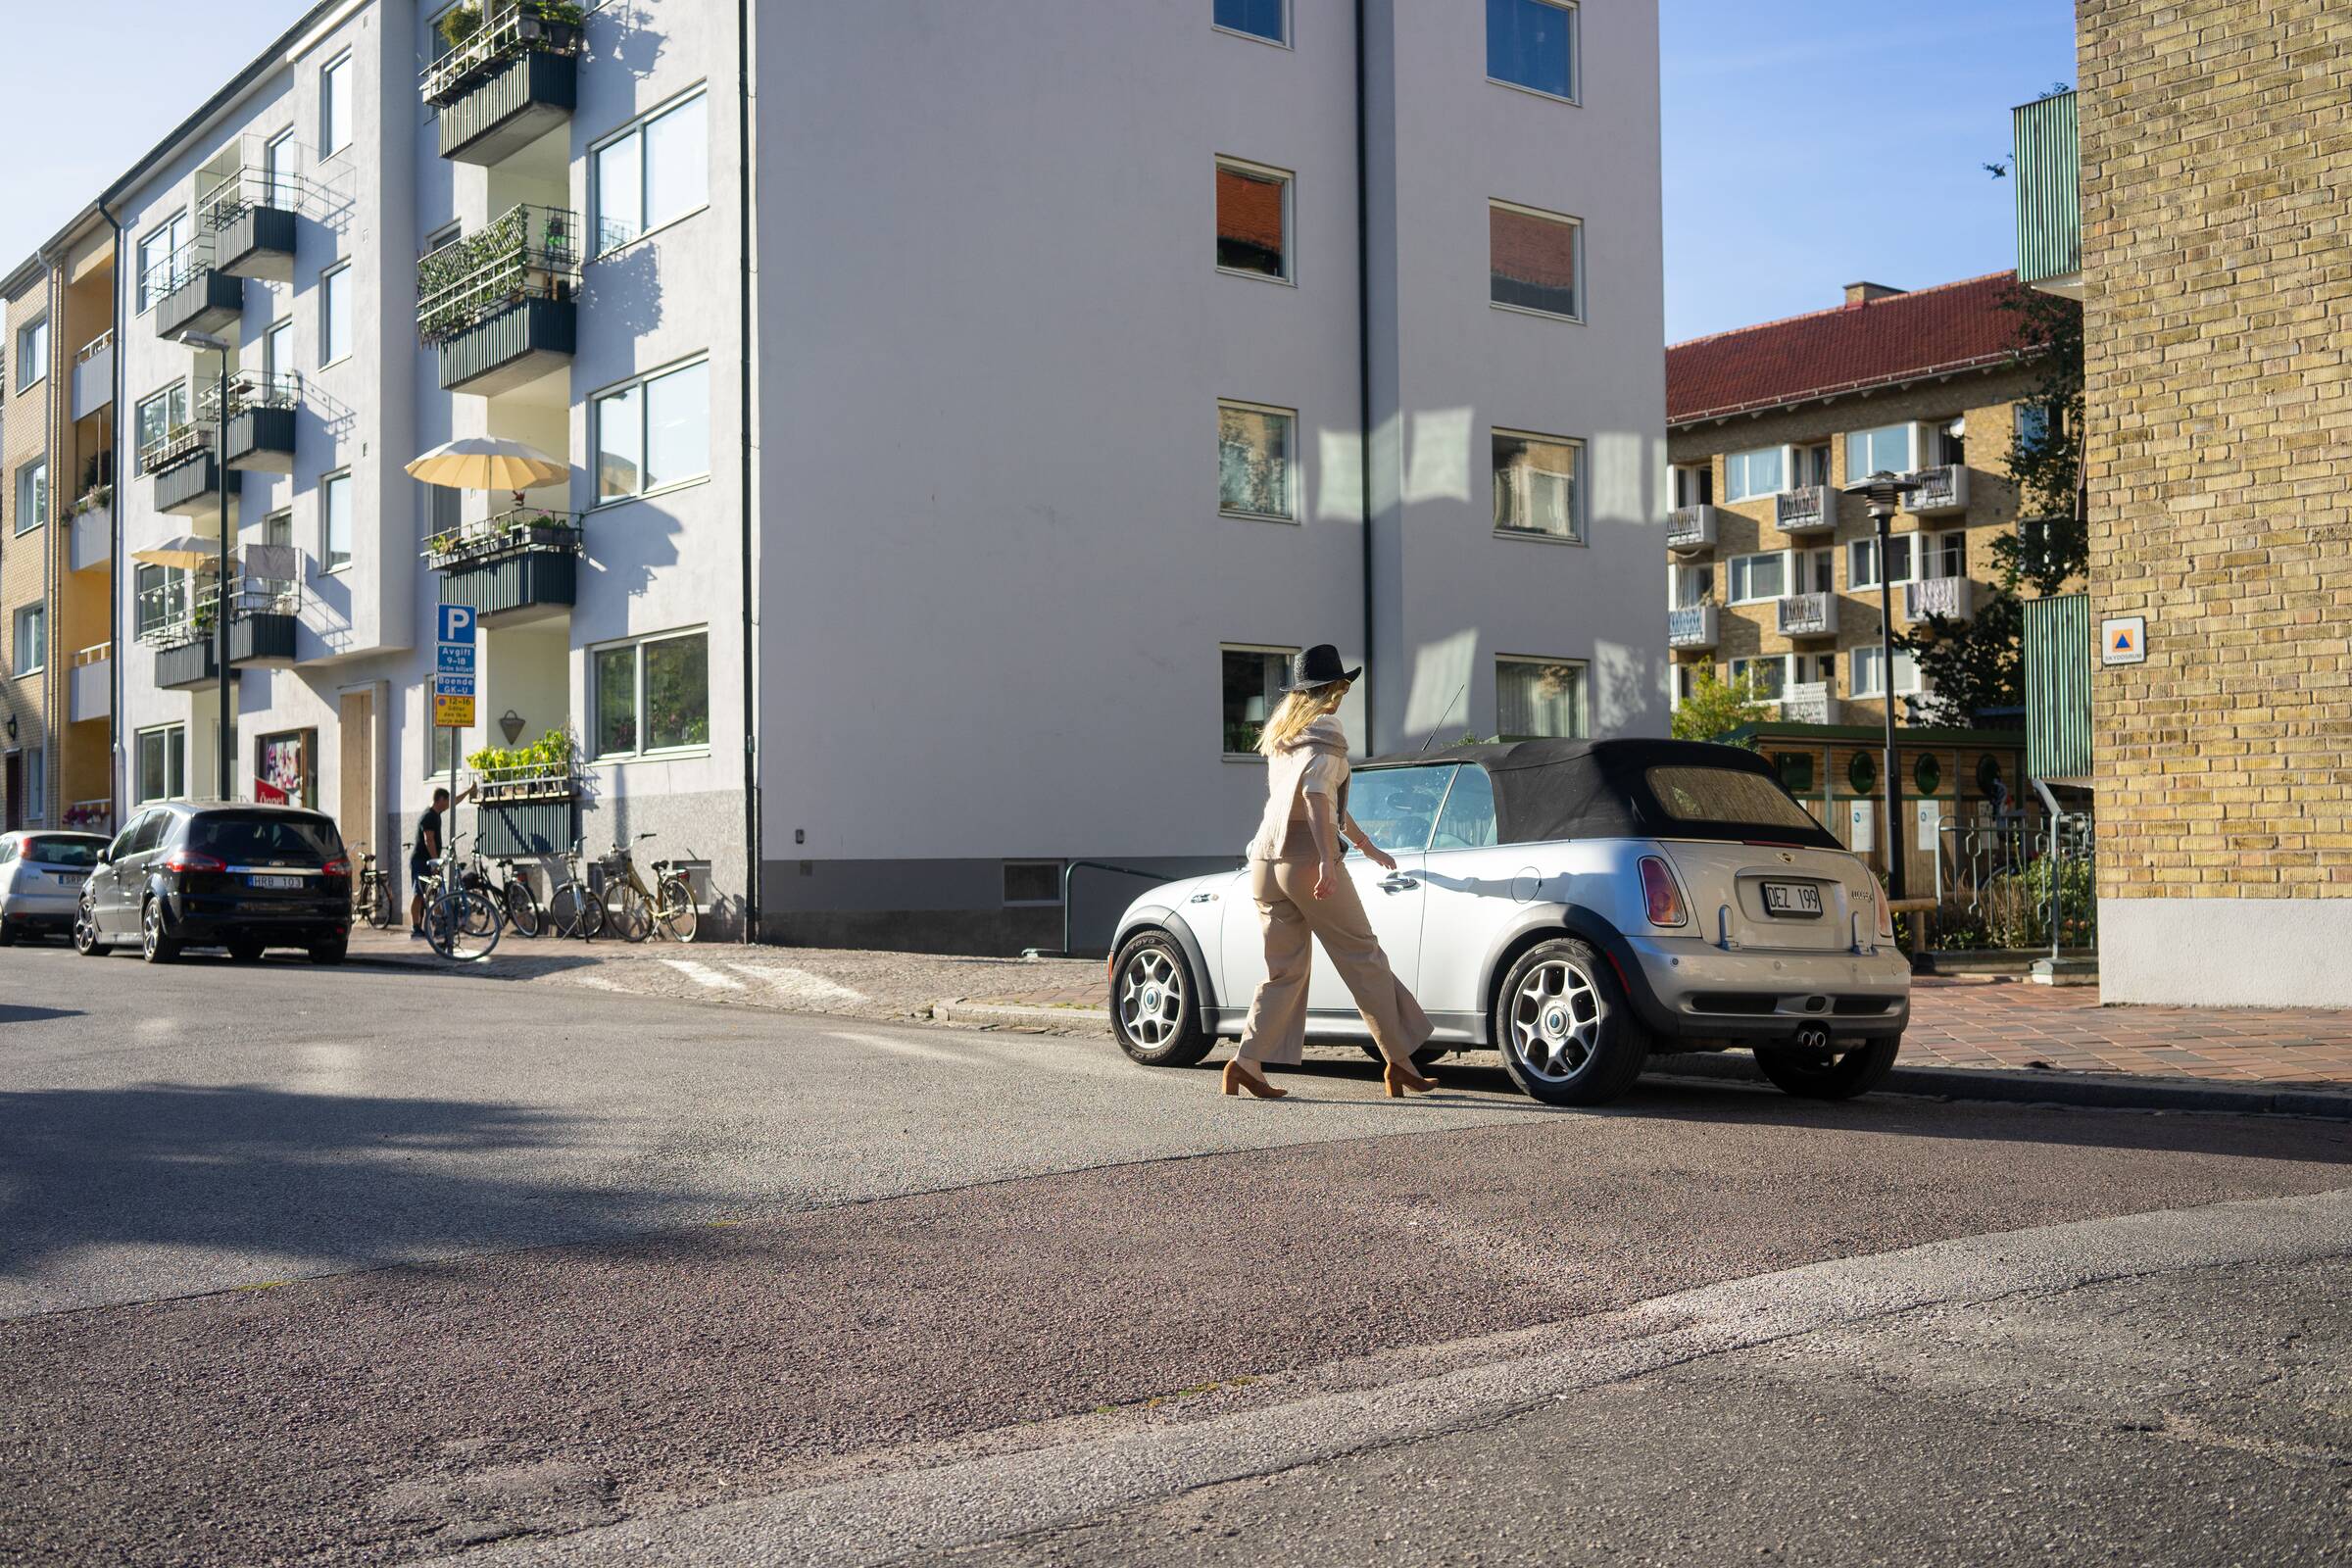 Parkering til din bil i Oslo?